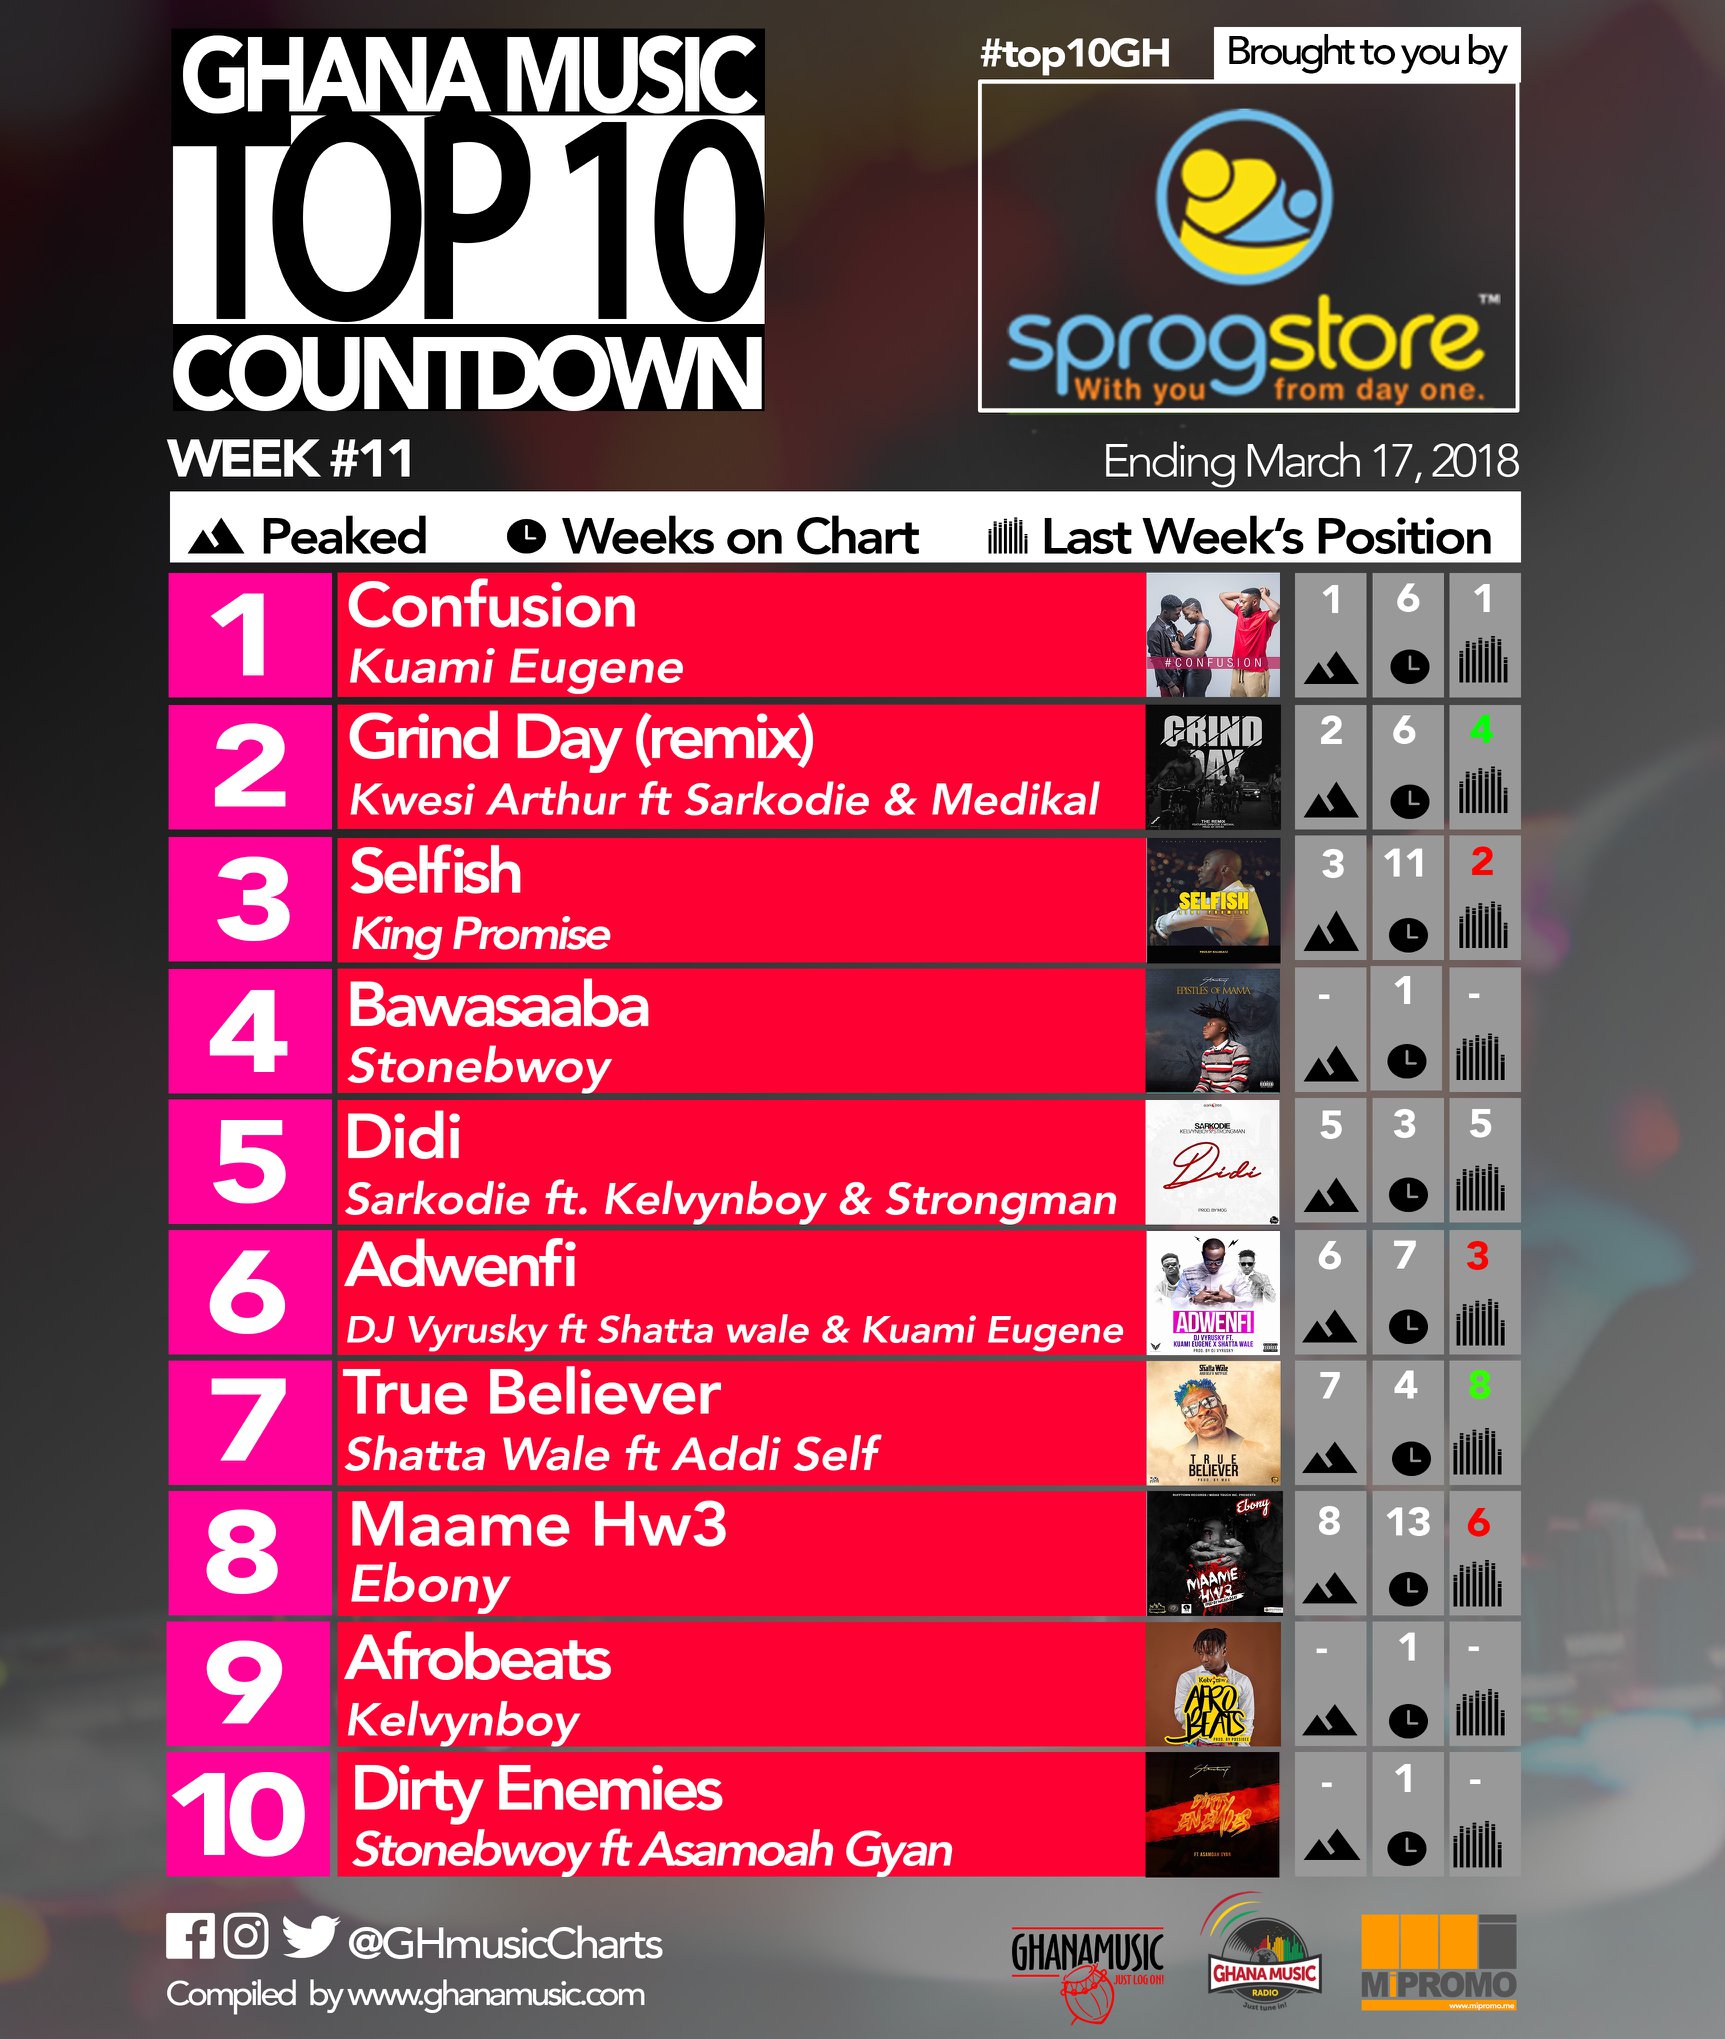 Week #11: Ghana Music Top 10 Countdown